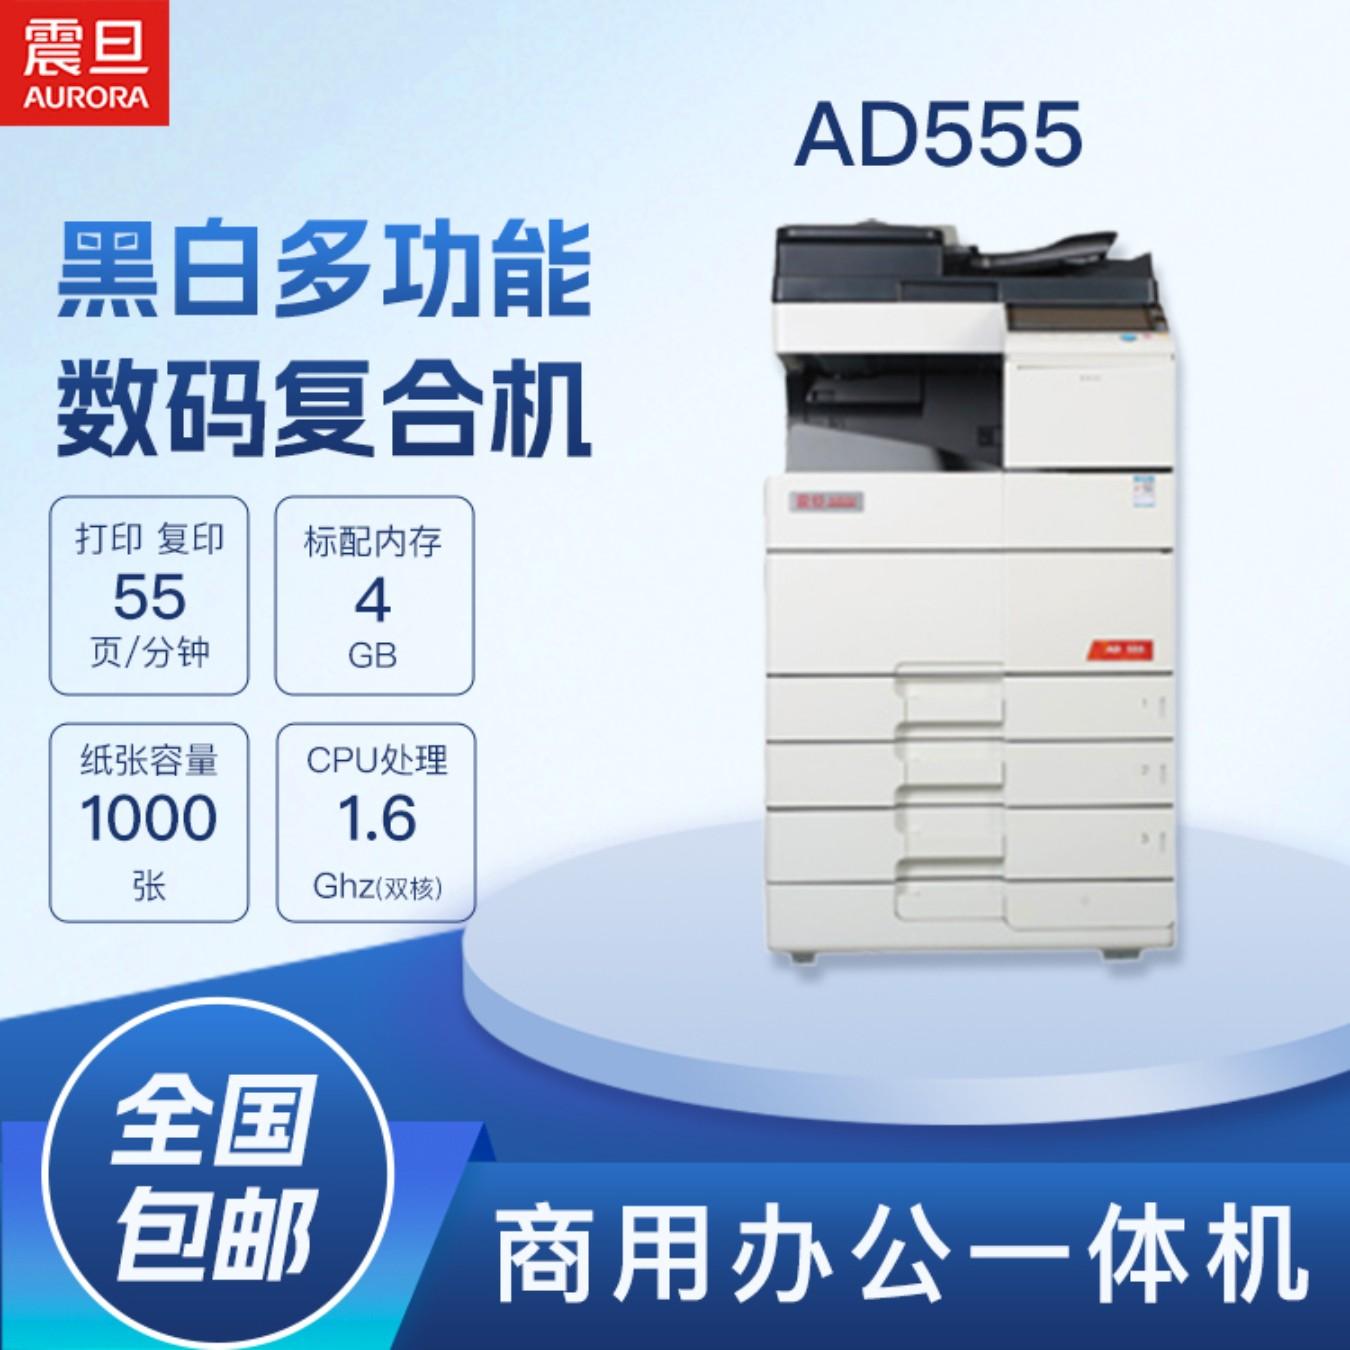 震旦彩色扫描黑白复印打印多功能AD555数码复合机一体机